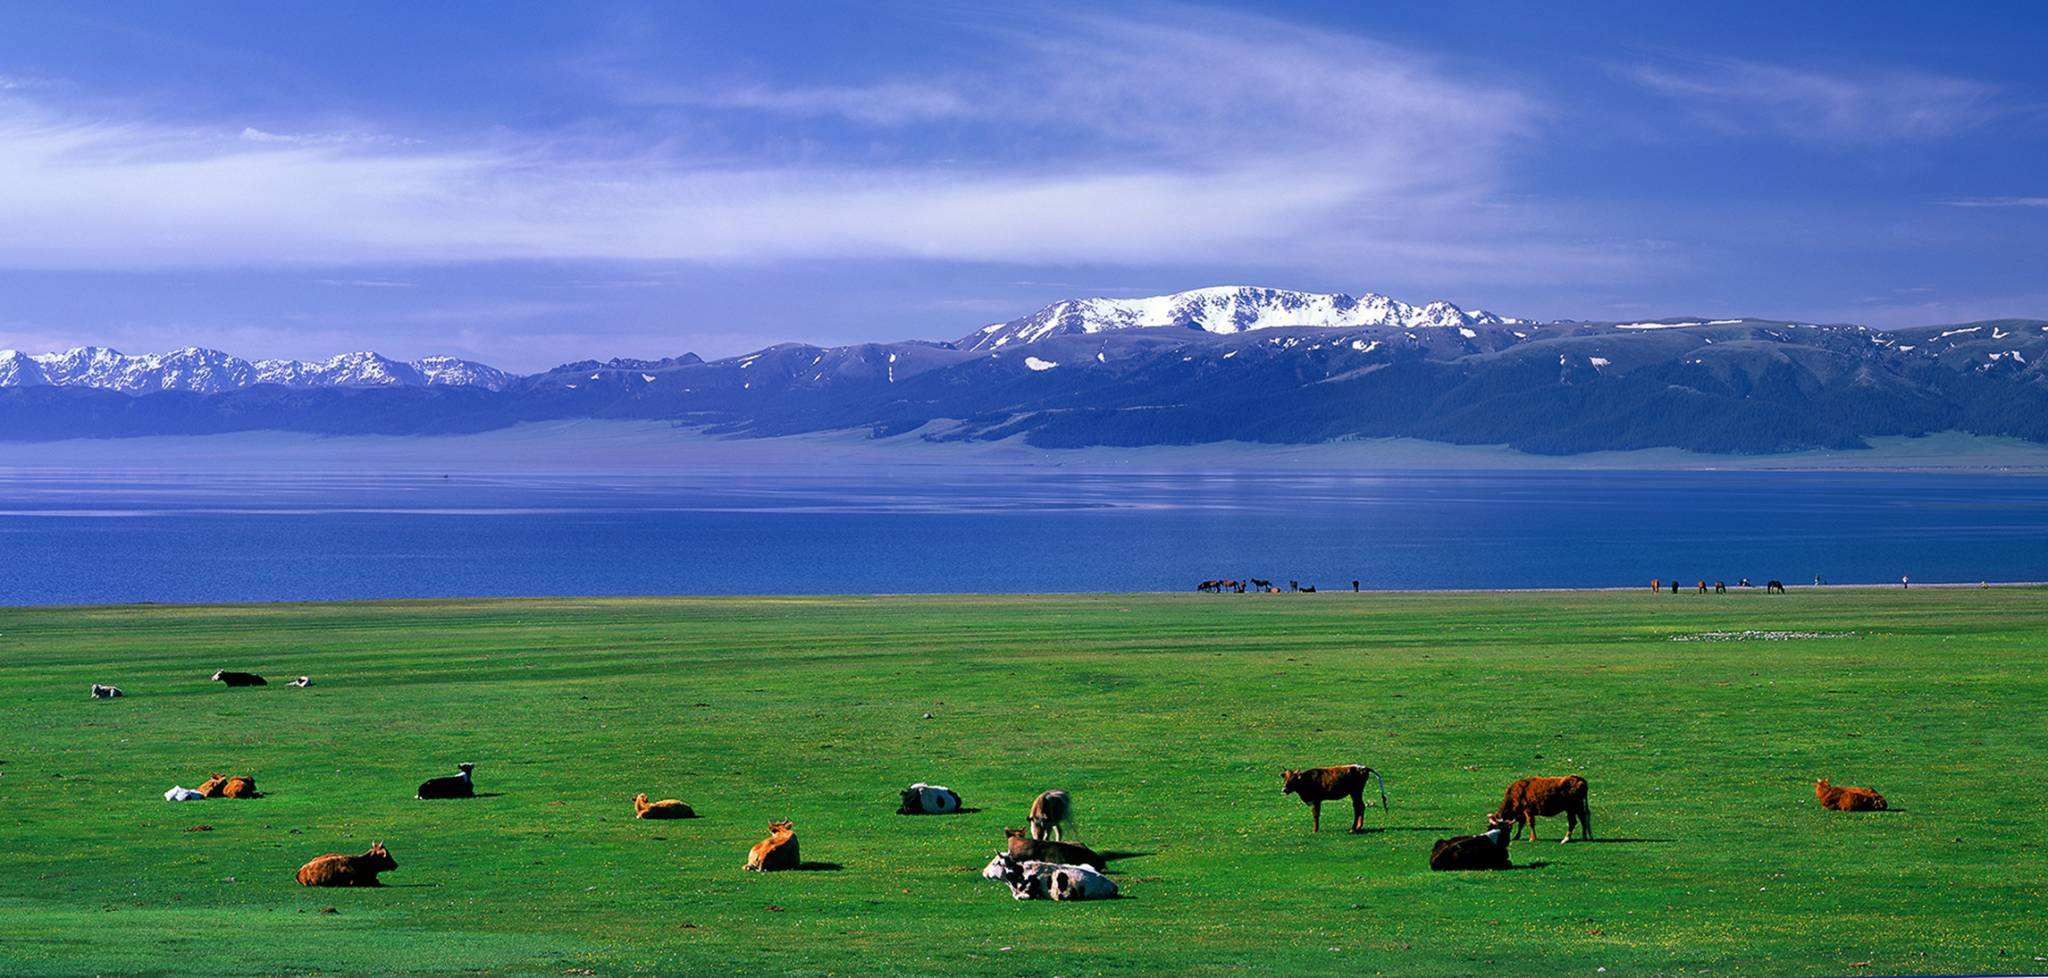 【途牛首发】旅游新疆十天自驾游,在北疆体验一年四季的美景!